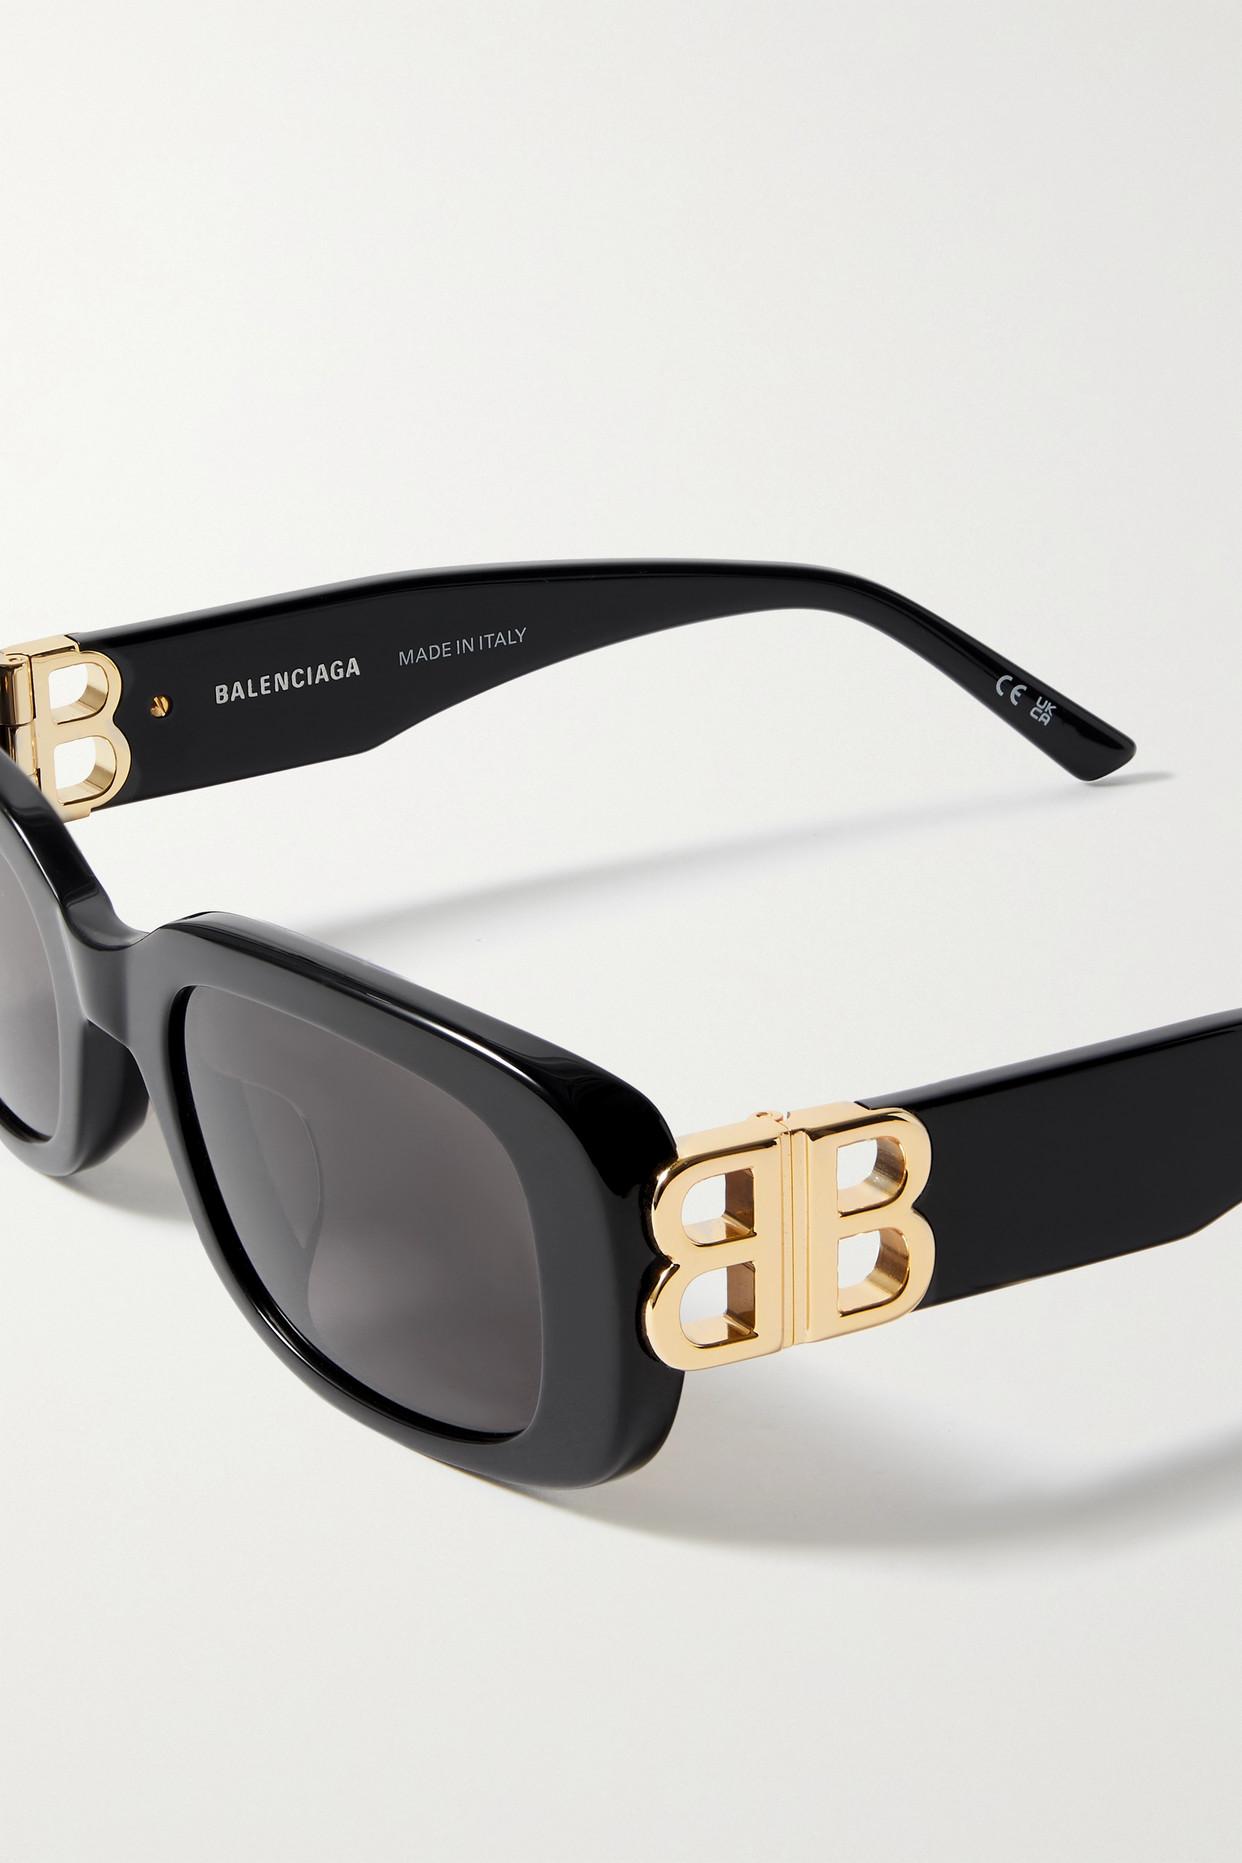 Rectangular frame sunglasses in black acetate